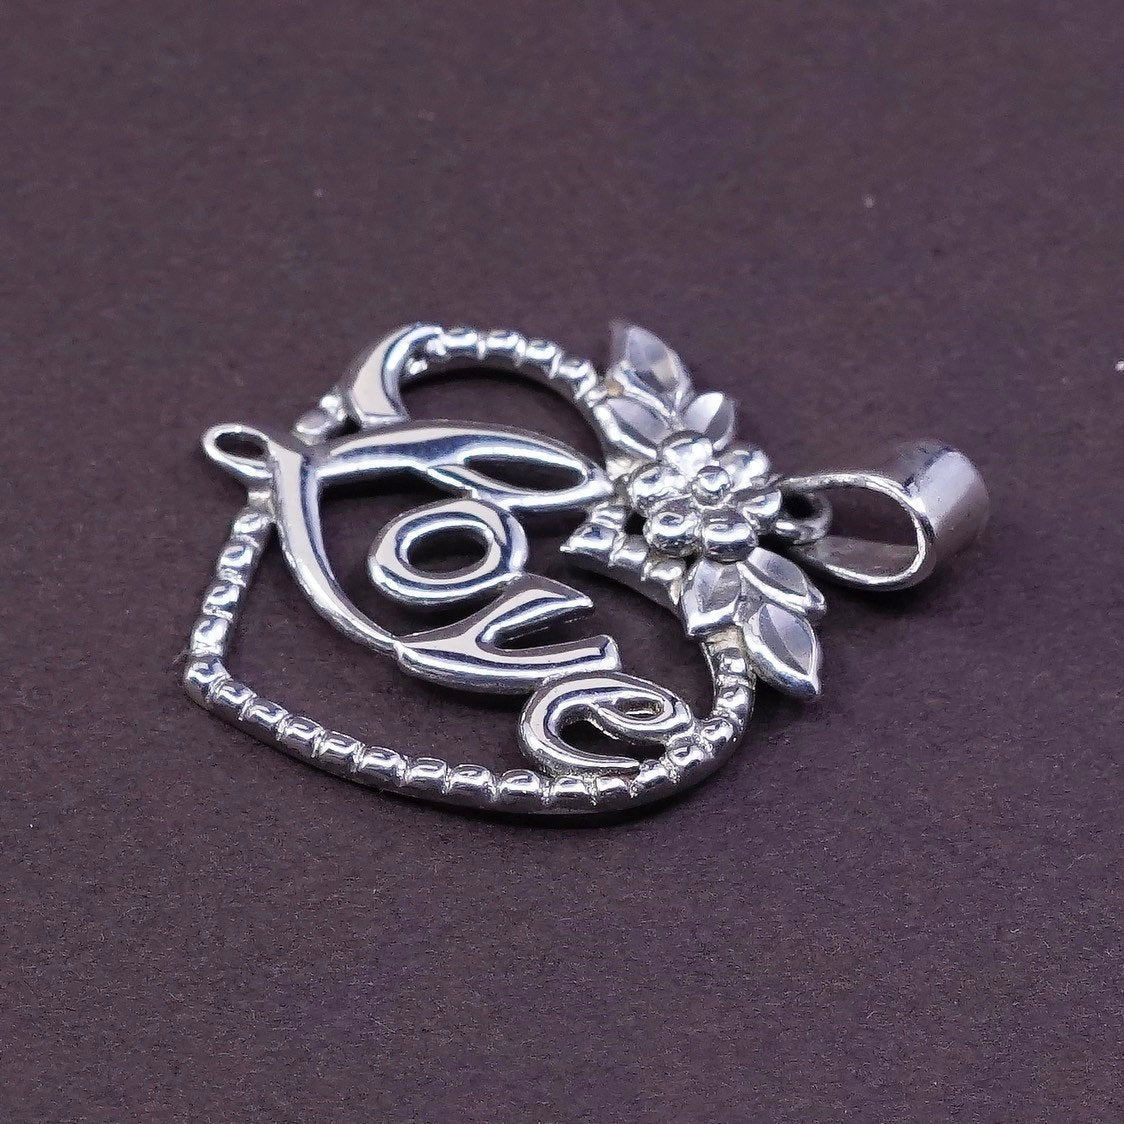 vtg Sterling silver handmade pendant, 925 heart charm w/ love inside